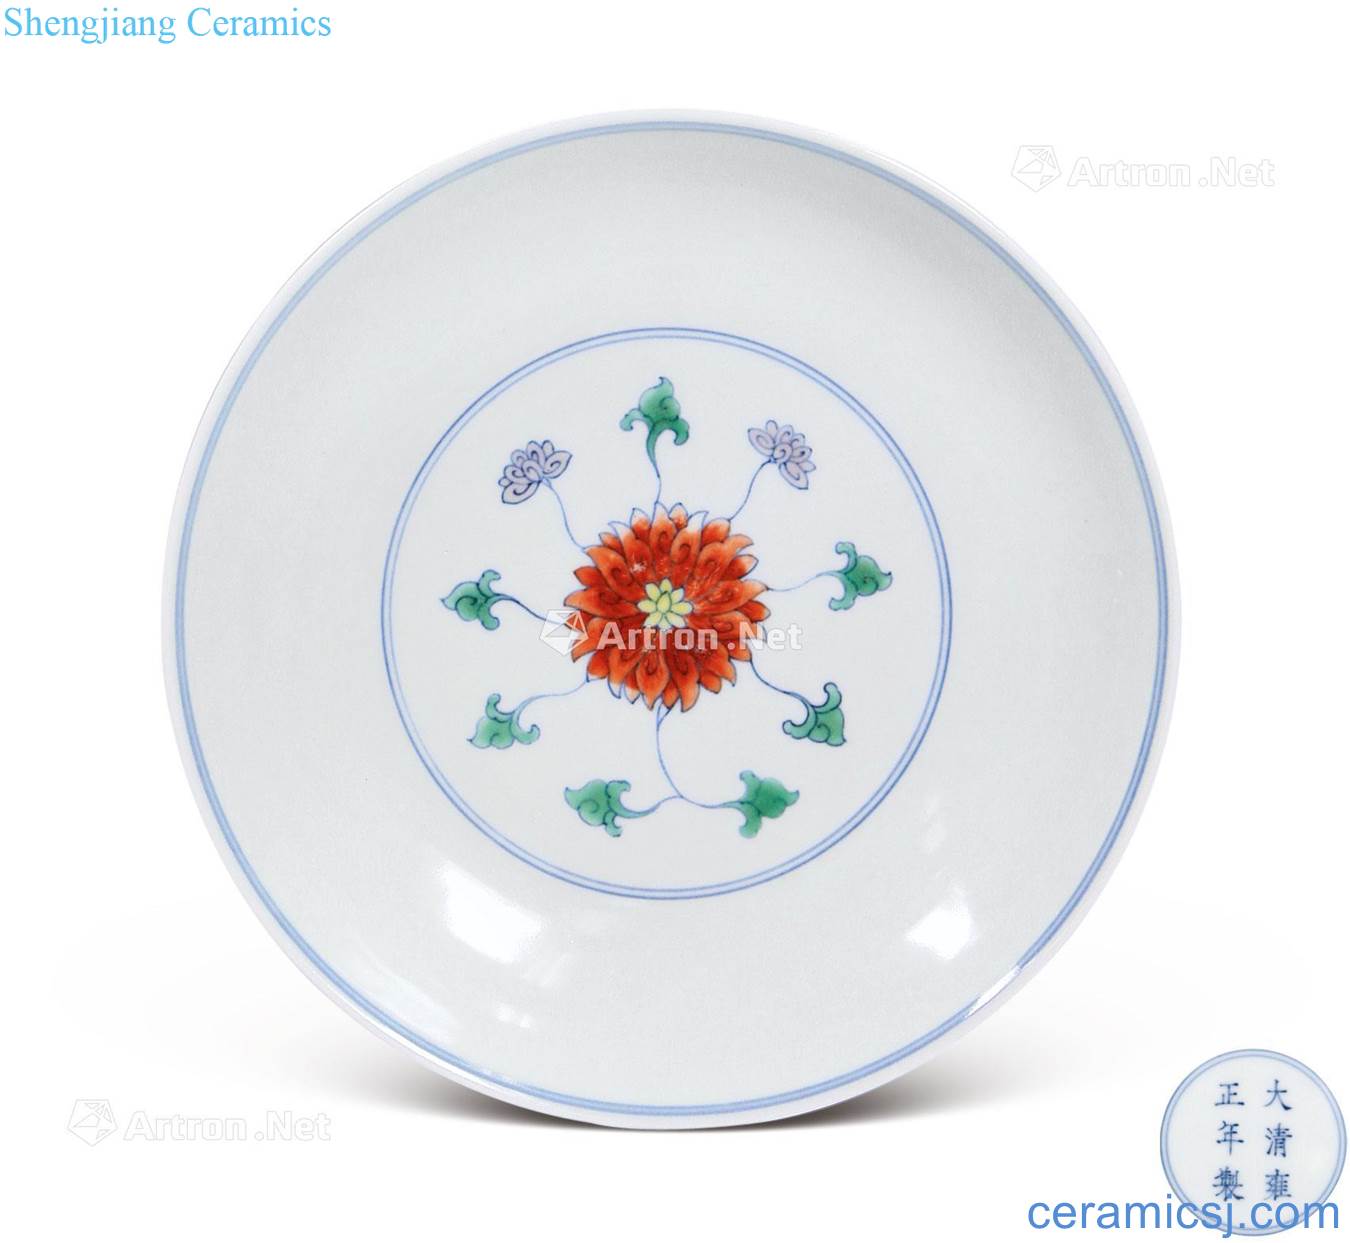 Qing yongzheng bean color lotus